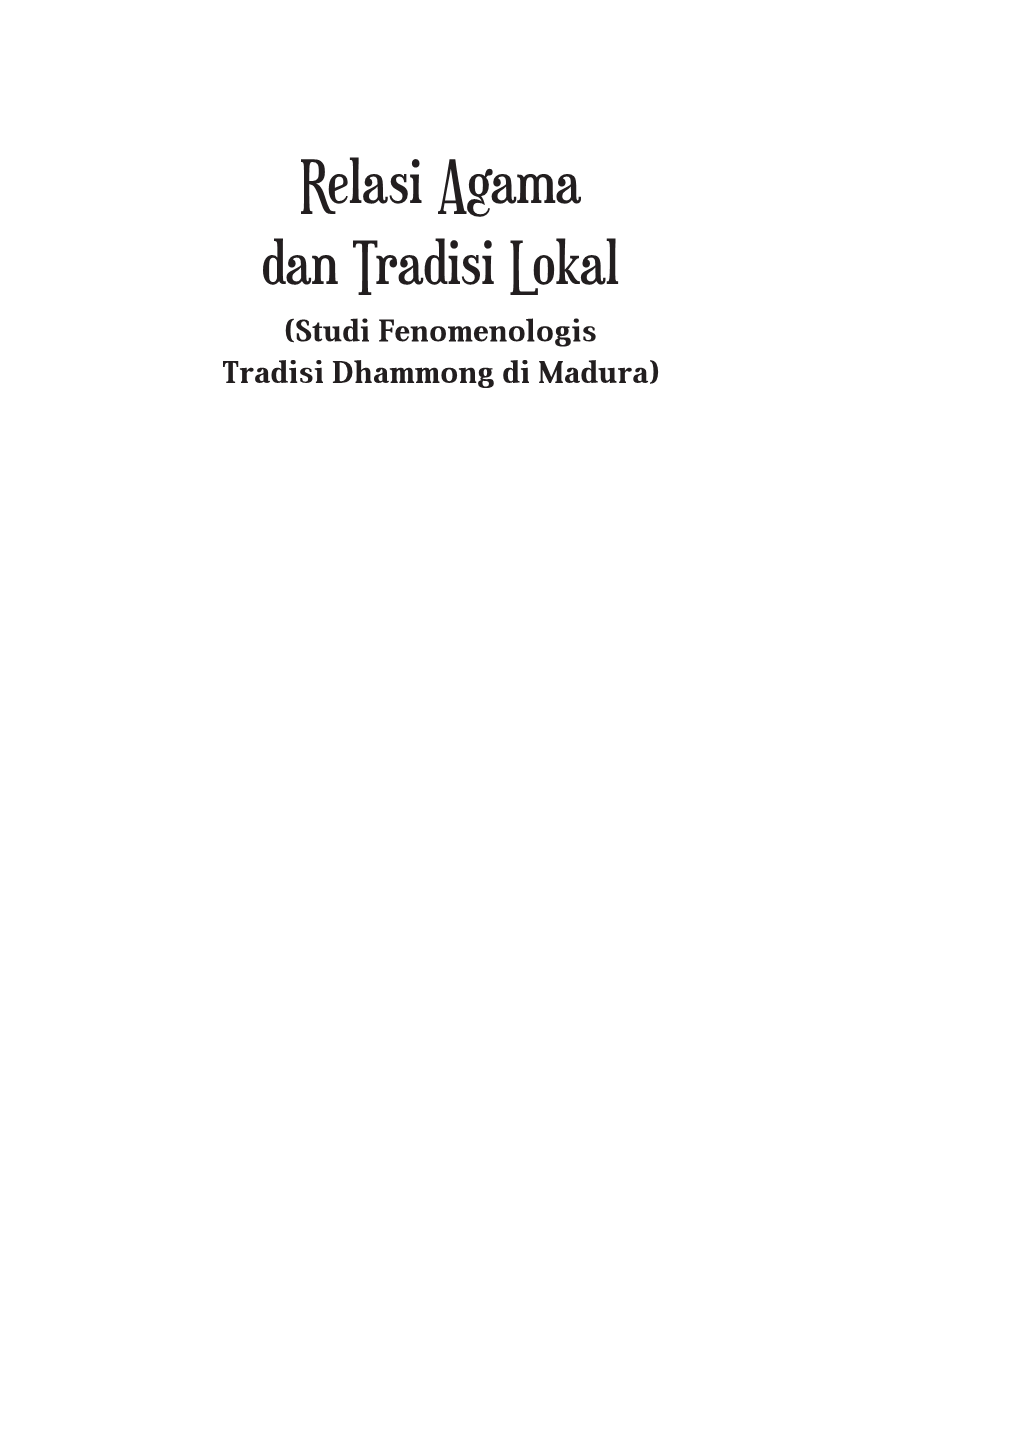 Relasi Agama Dan Tradisi Lokal (Studi Fenomenologis Tradisi Dhammong Di Madura) Sanksi Pelanggaran Pasal 113 Undang-Undang No